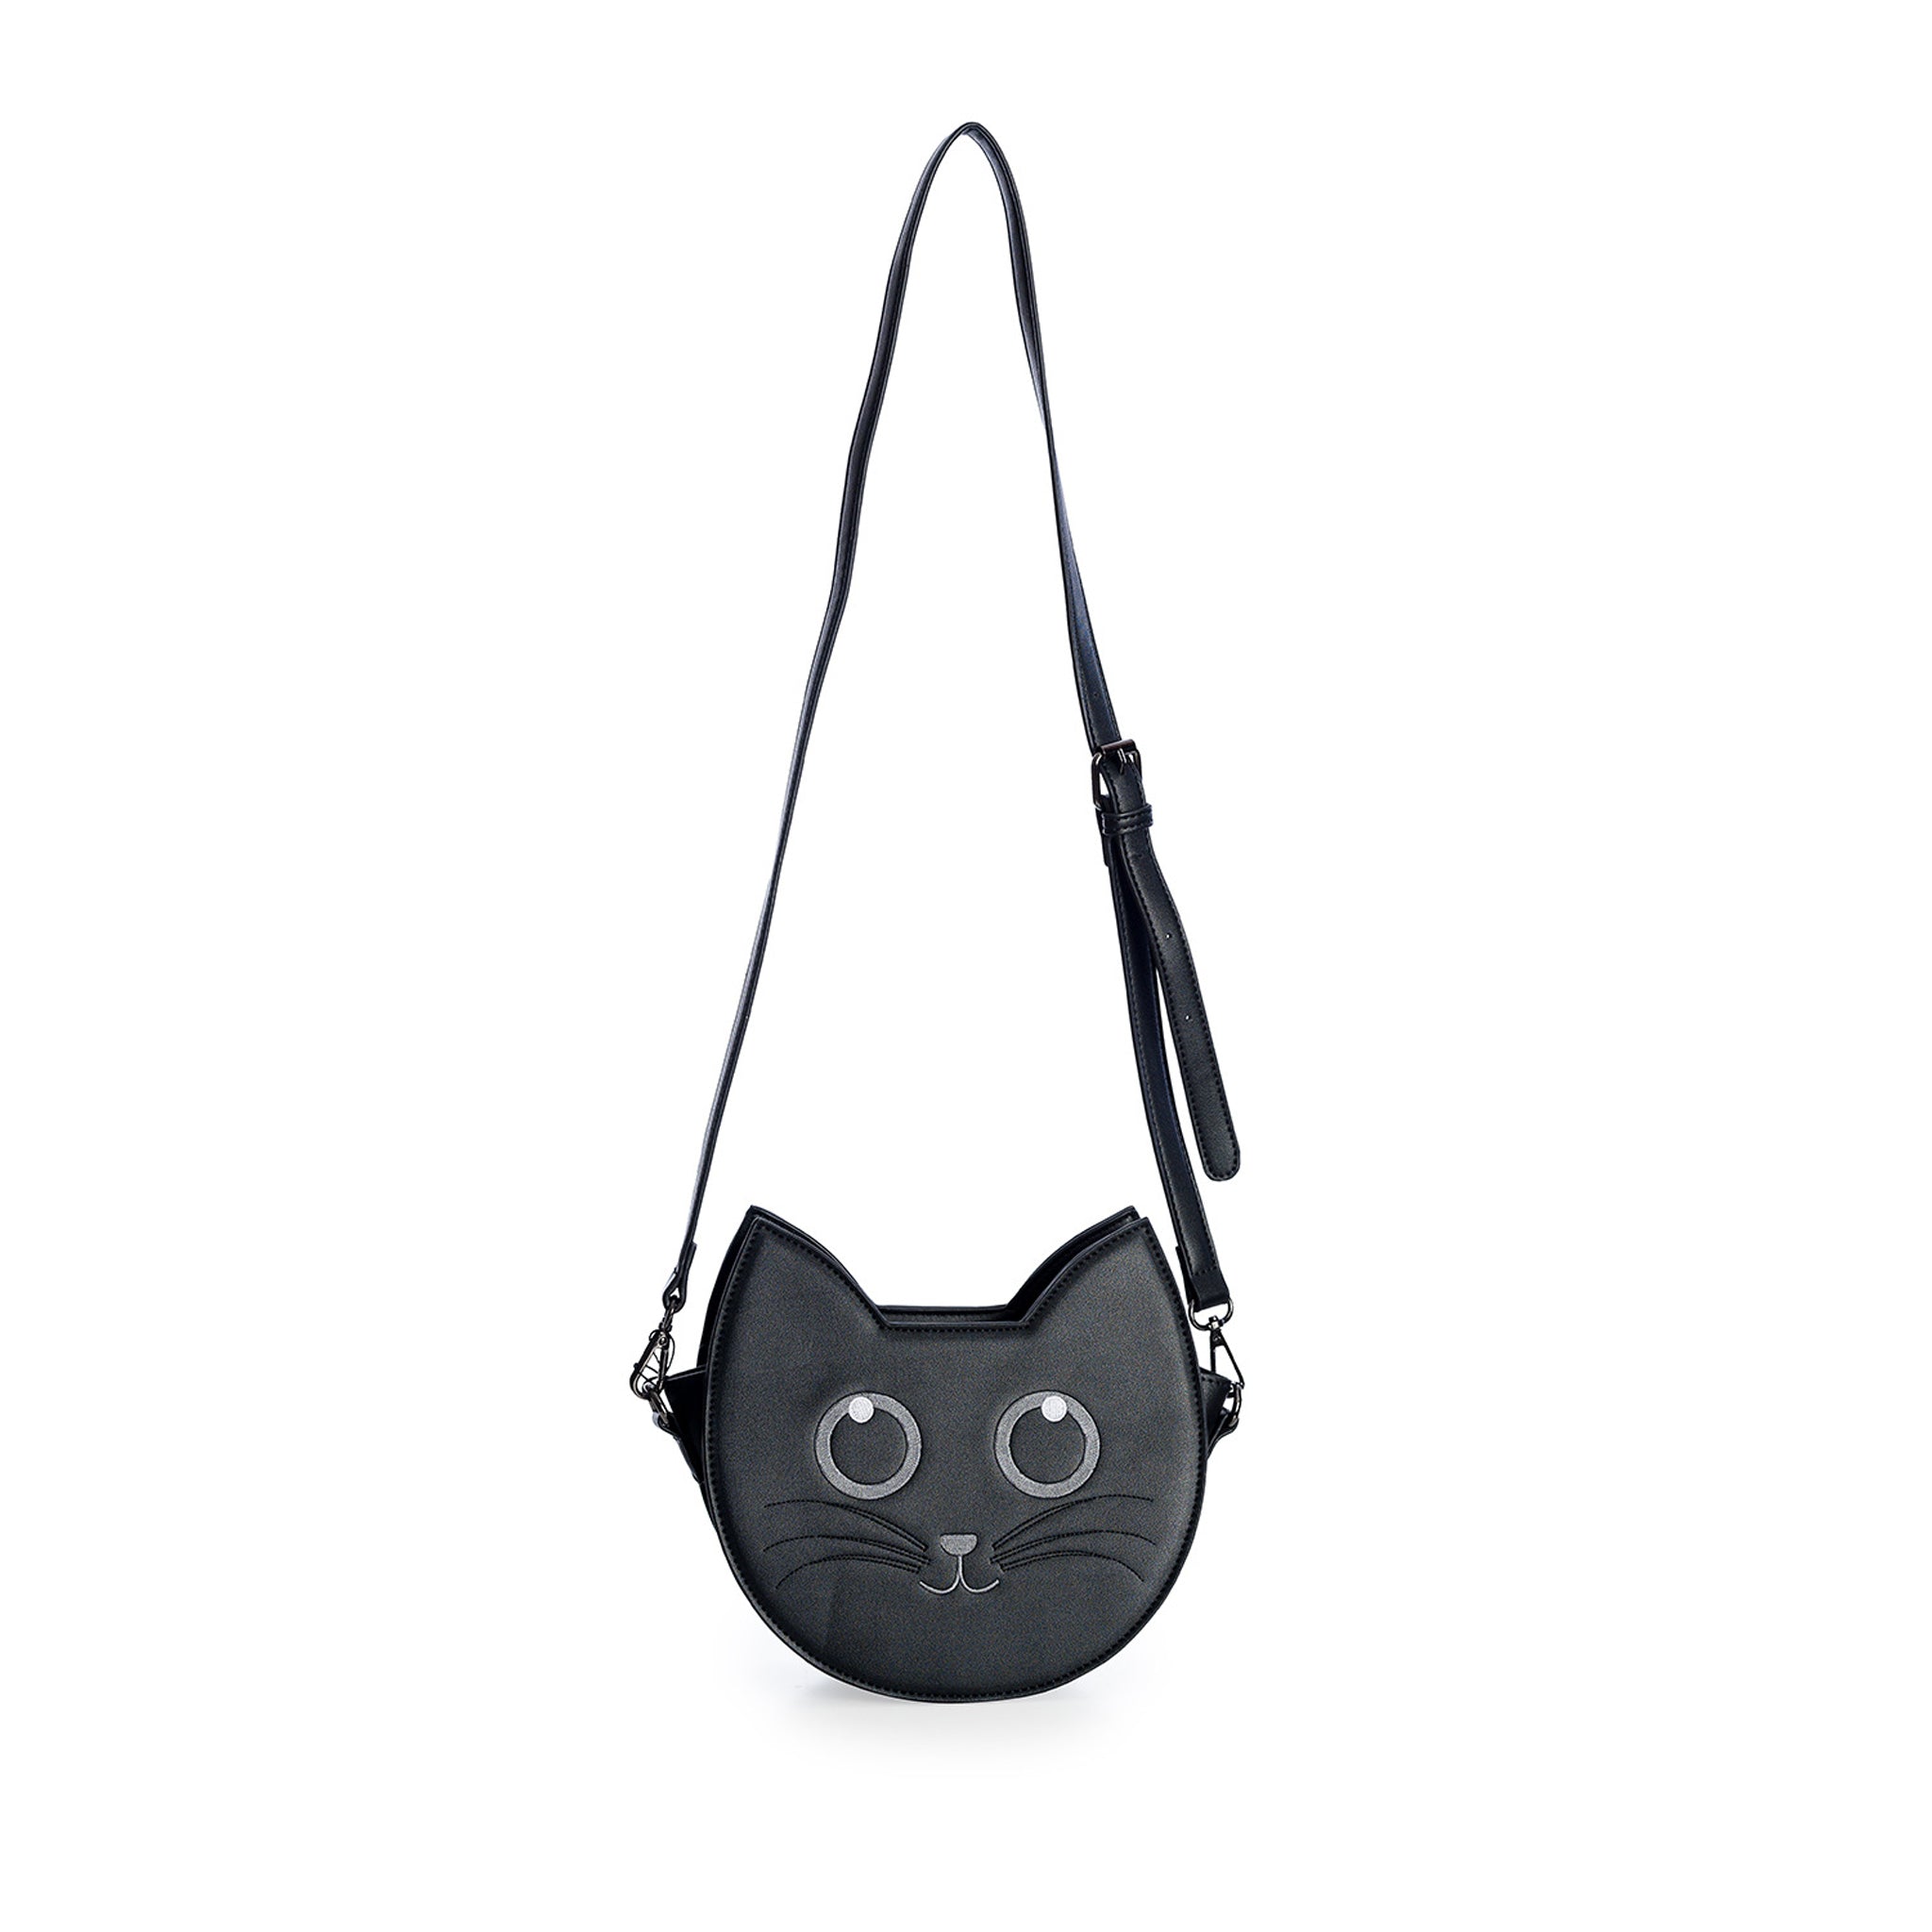 Wendigo cat purse